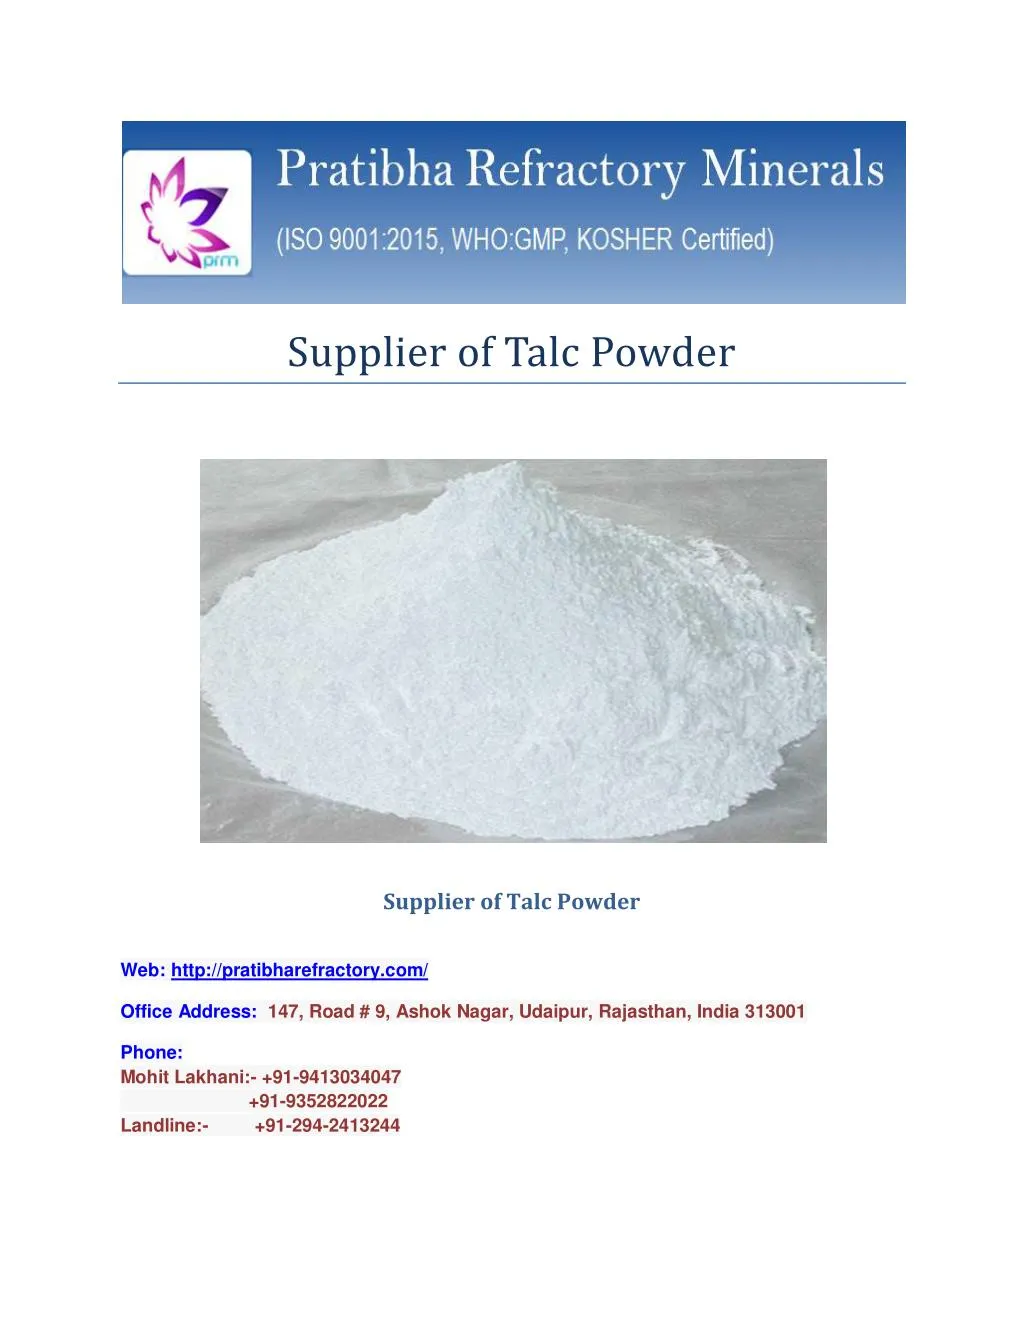 supplier of talc powder n.